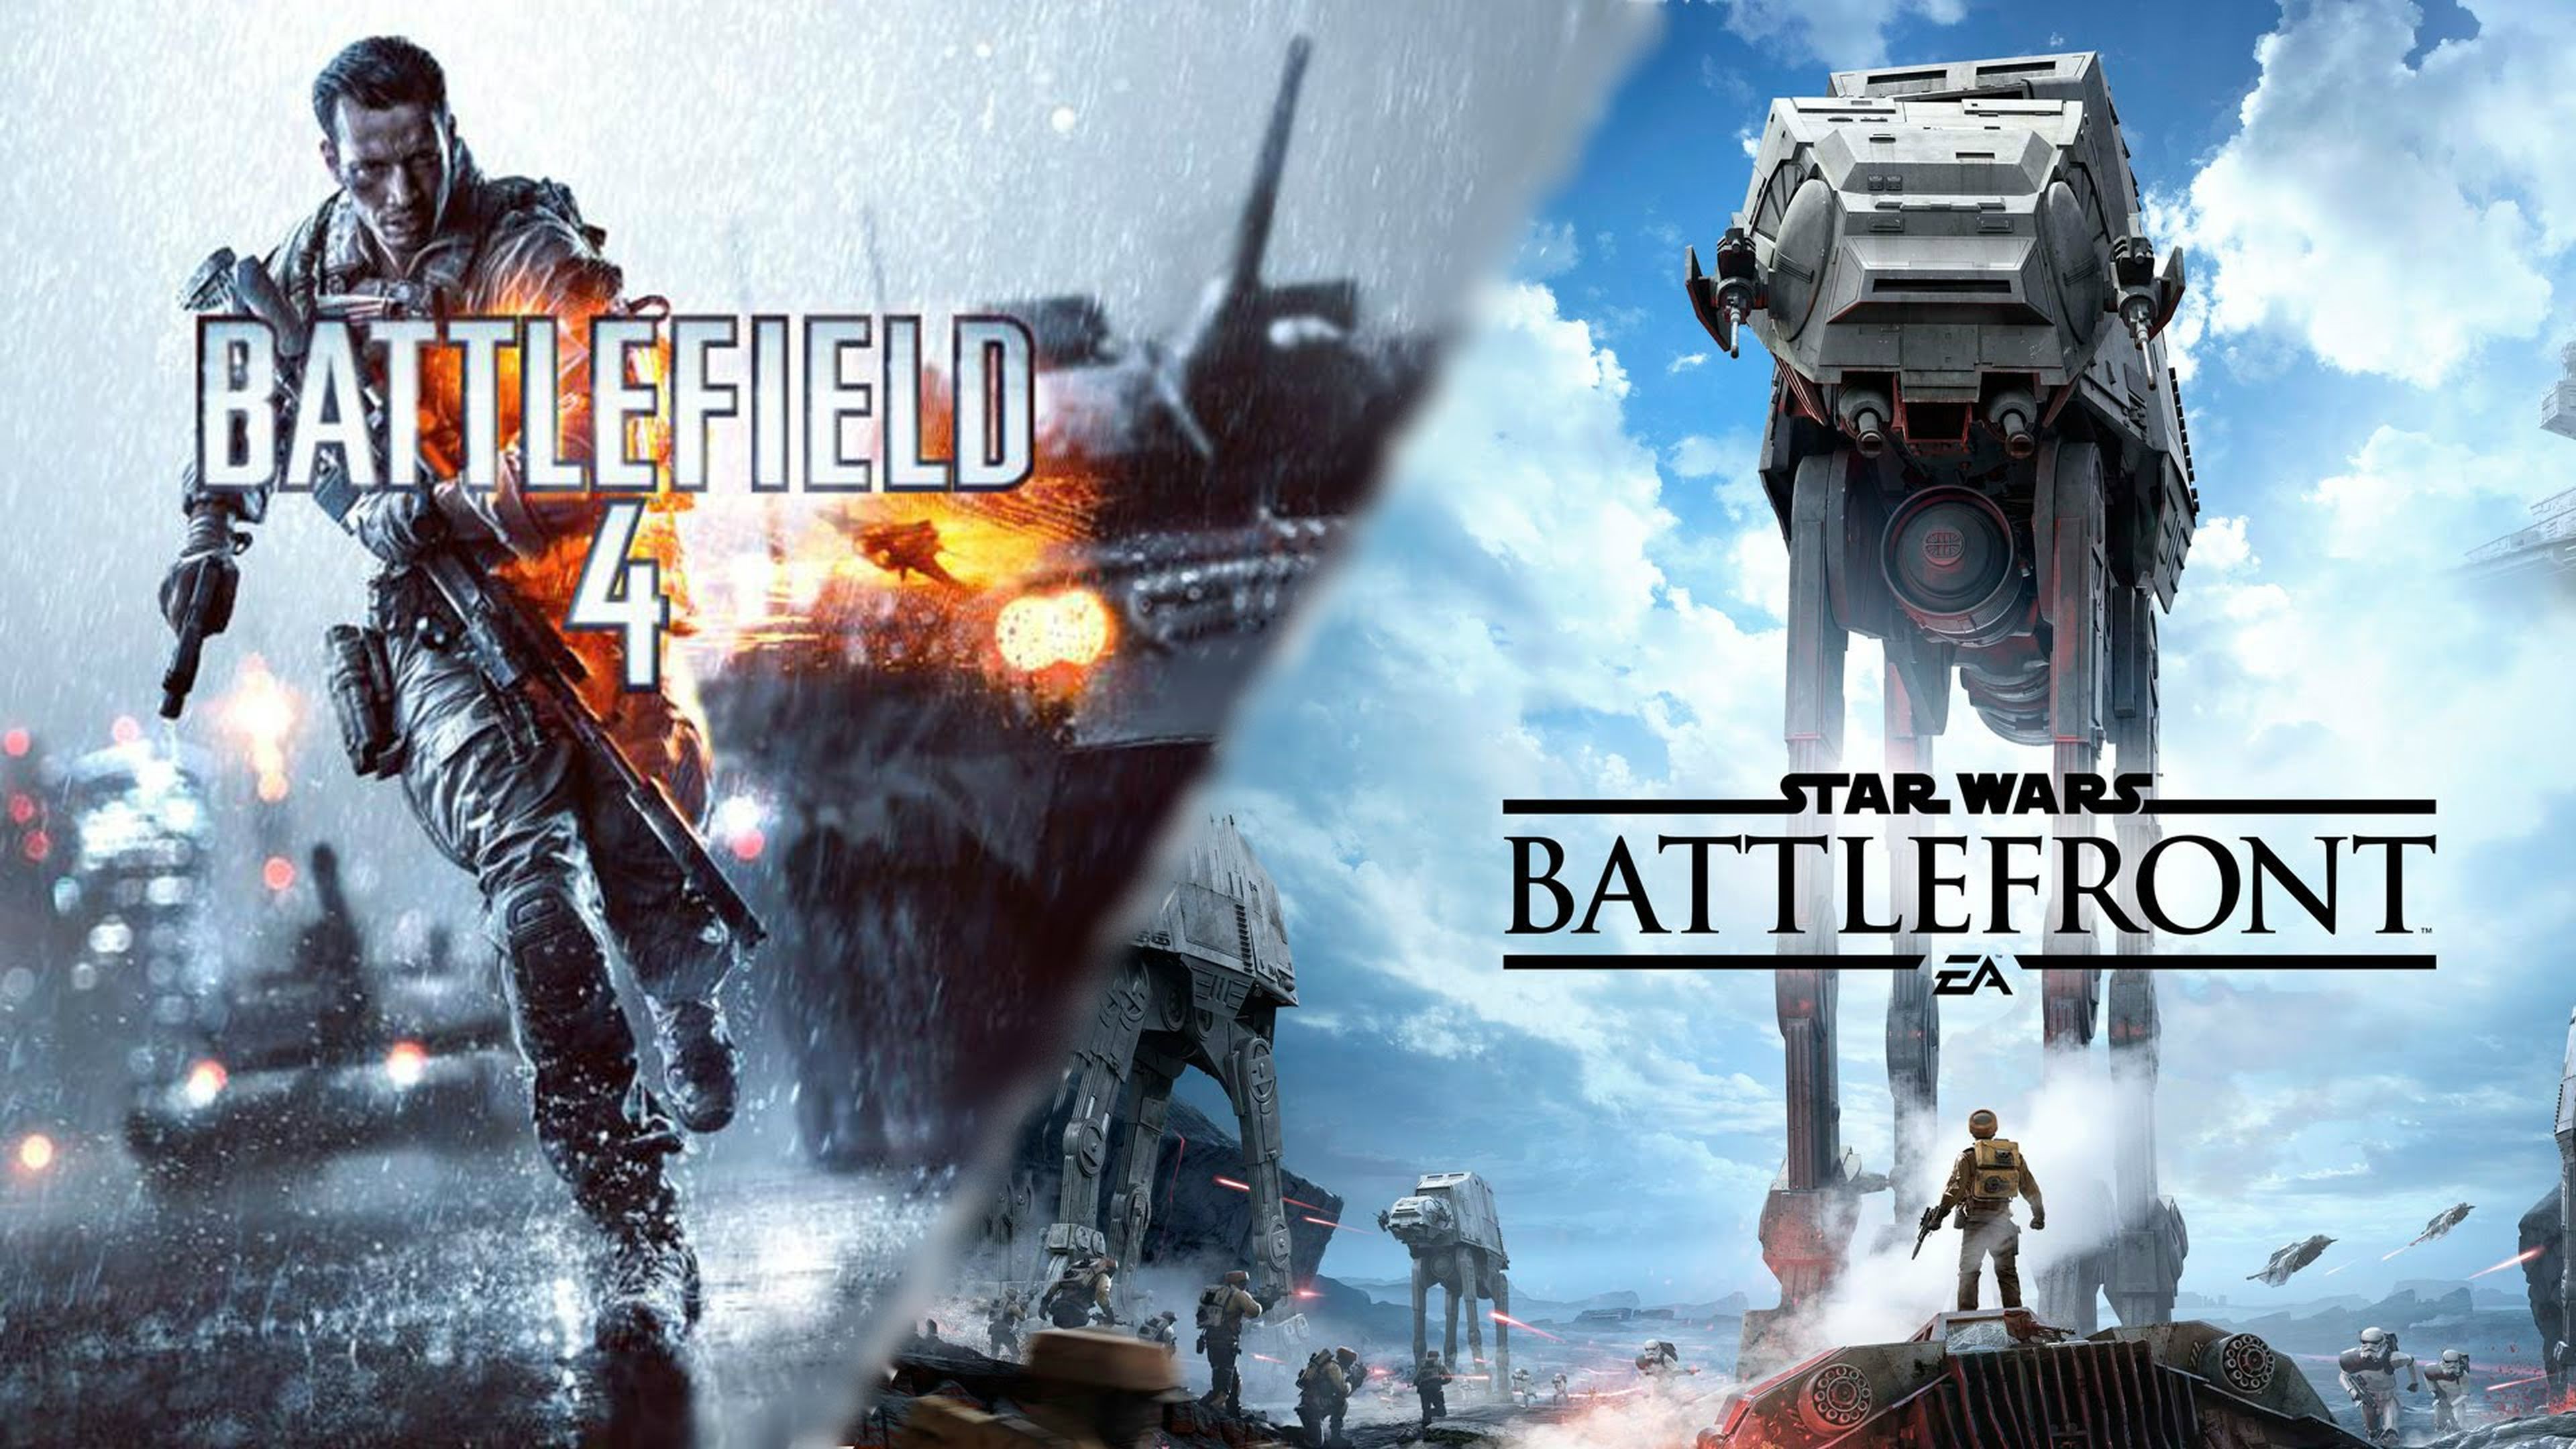 Star Wars Battlefront - Battlefield 4 tiene un 50% más de usuarios activos